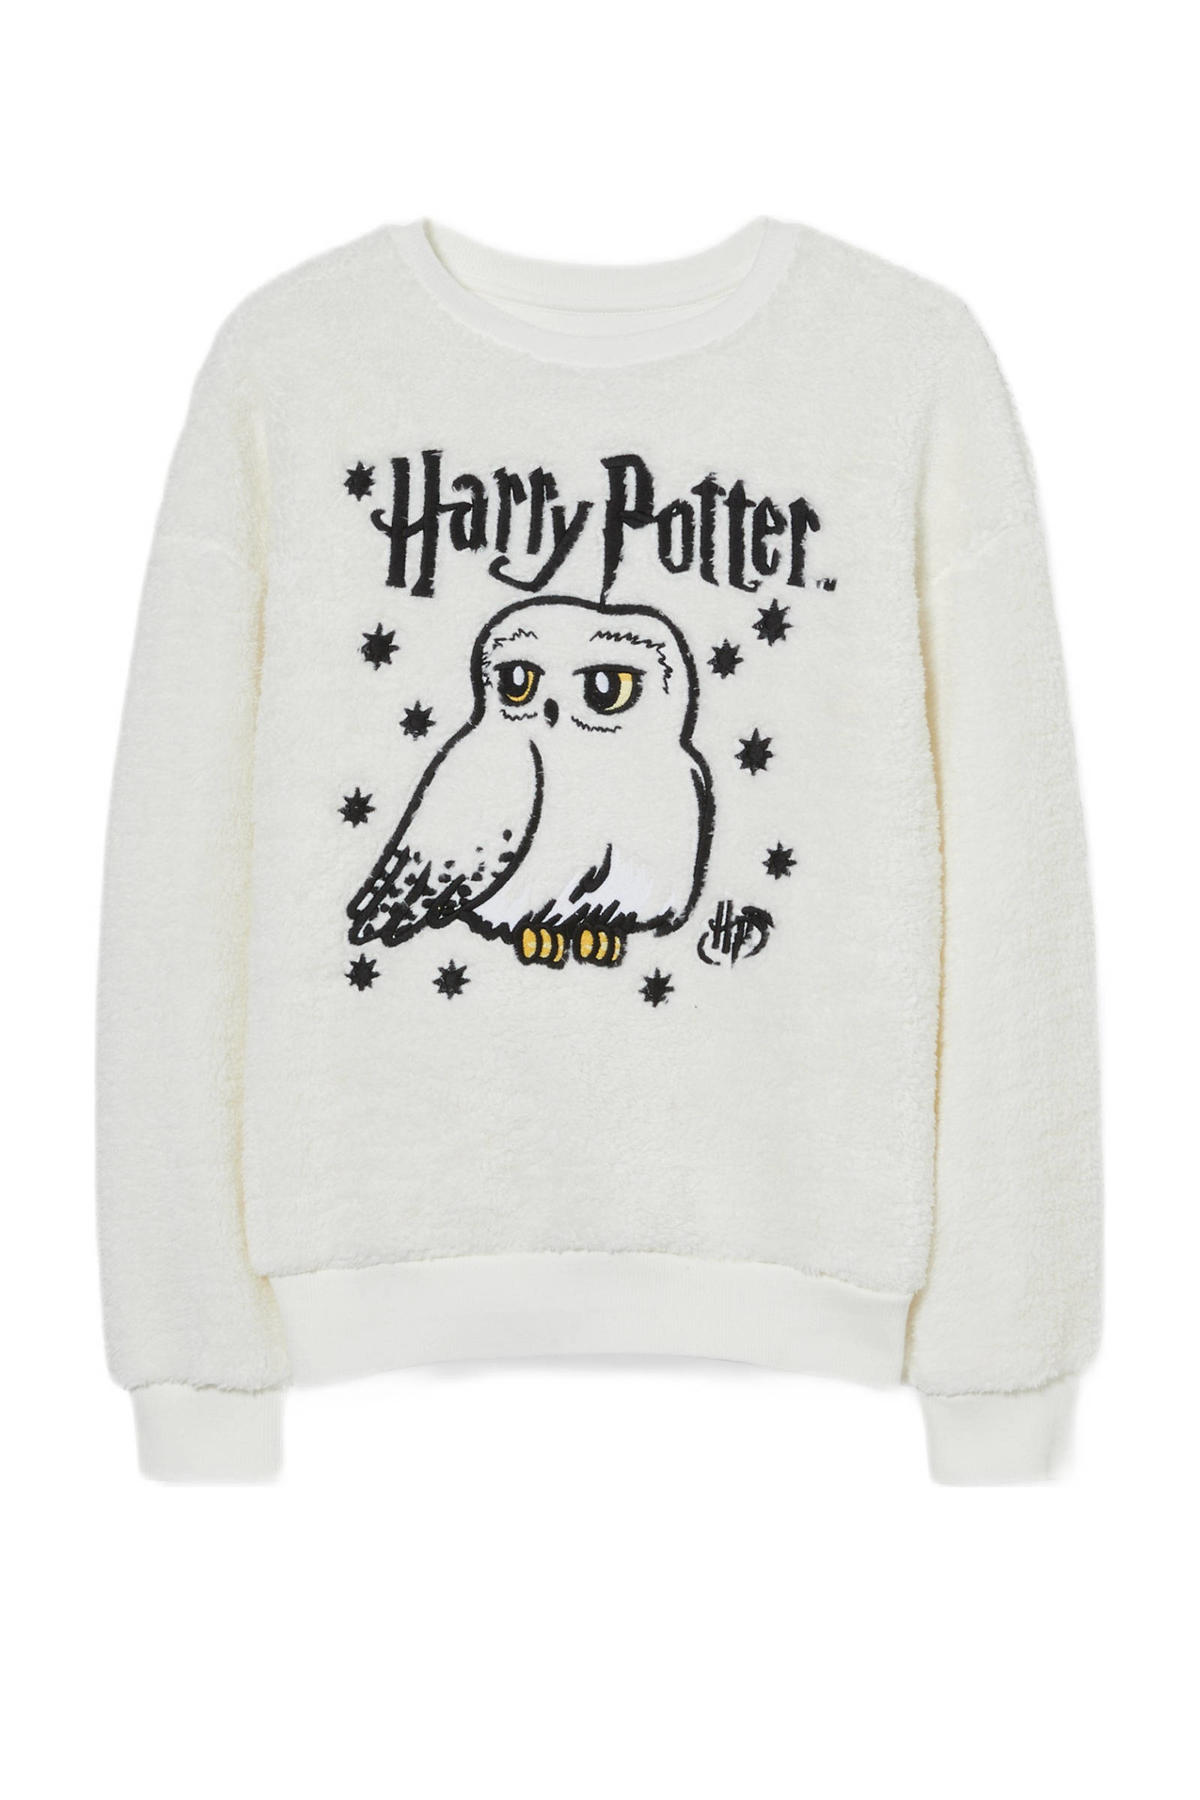 Gemiddeld hoek Hilarisch C&A Harry Potter sweater met printopdruk wit | wehkamp